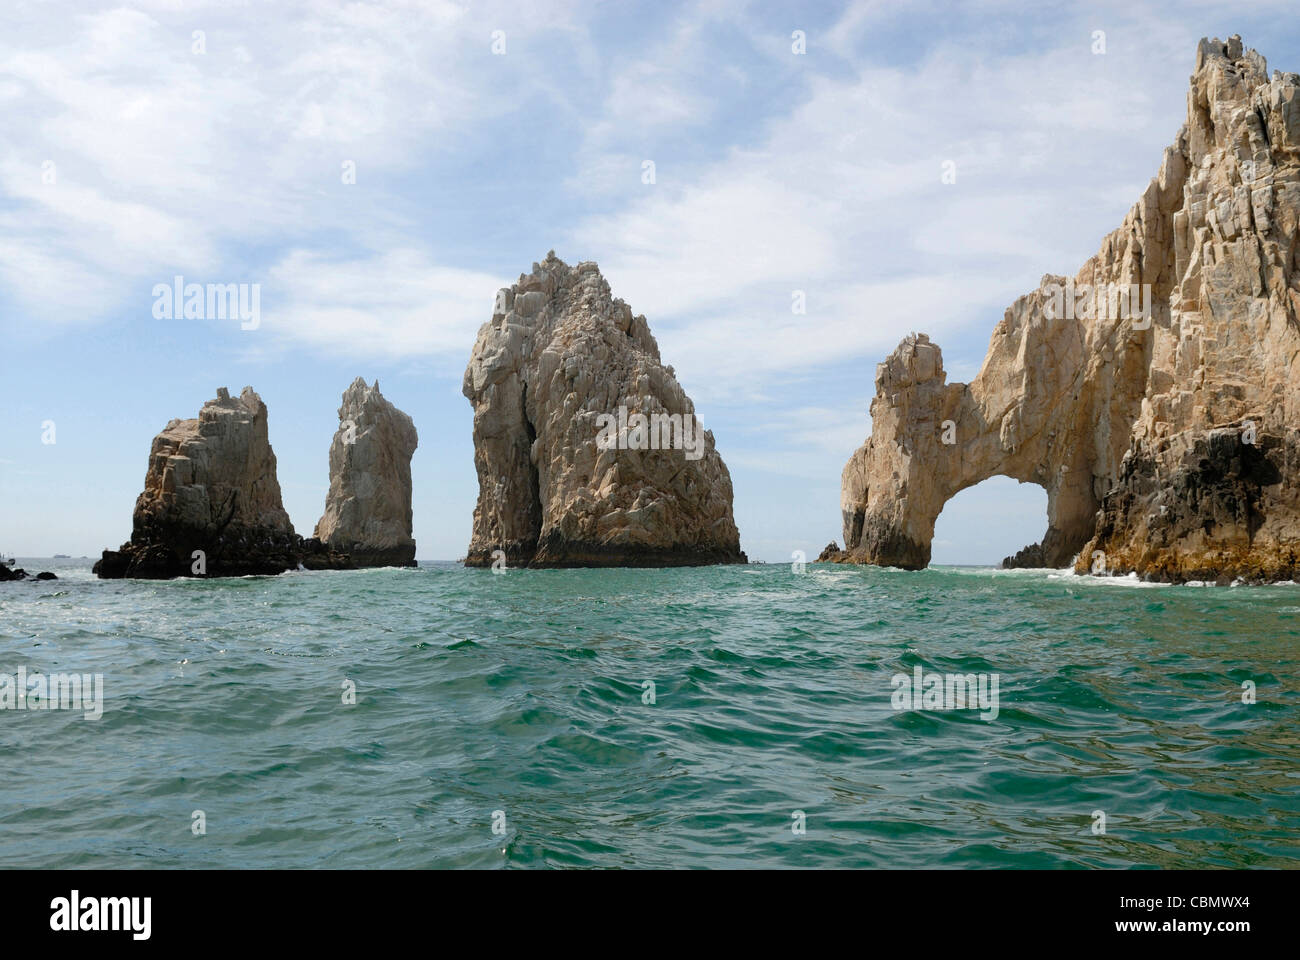 Landmark Lands End Arch near Cabo San Lucas, Baja California, Mexico Stock Photo